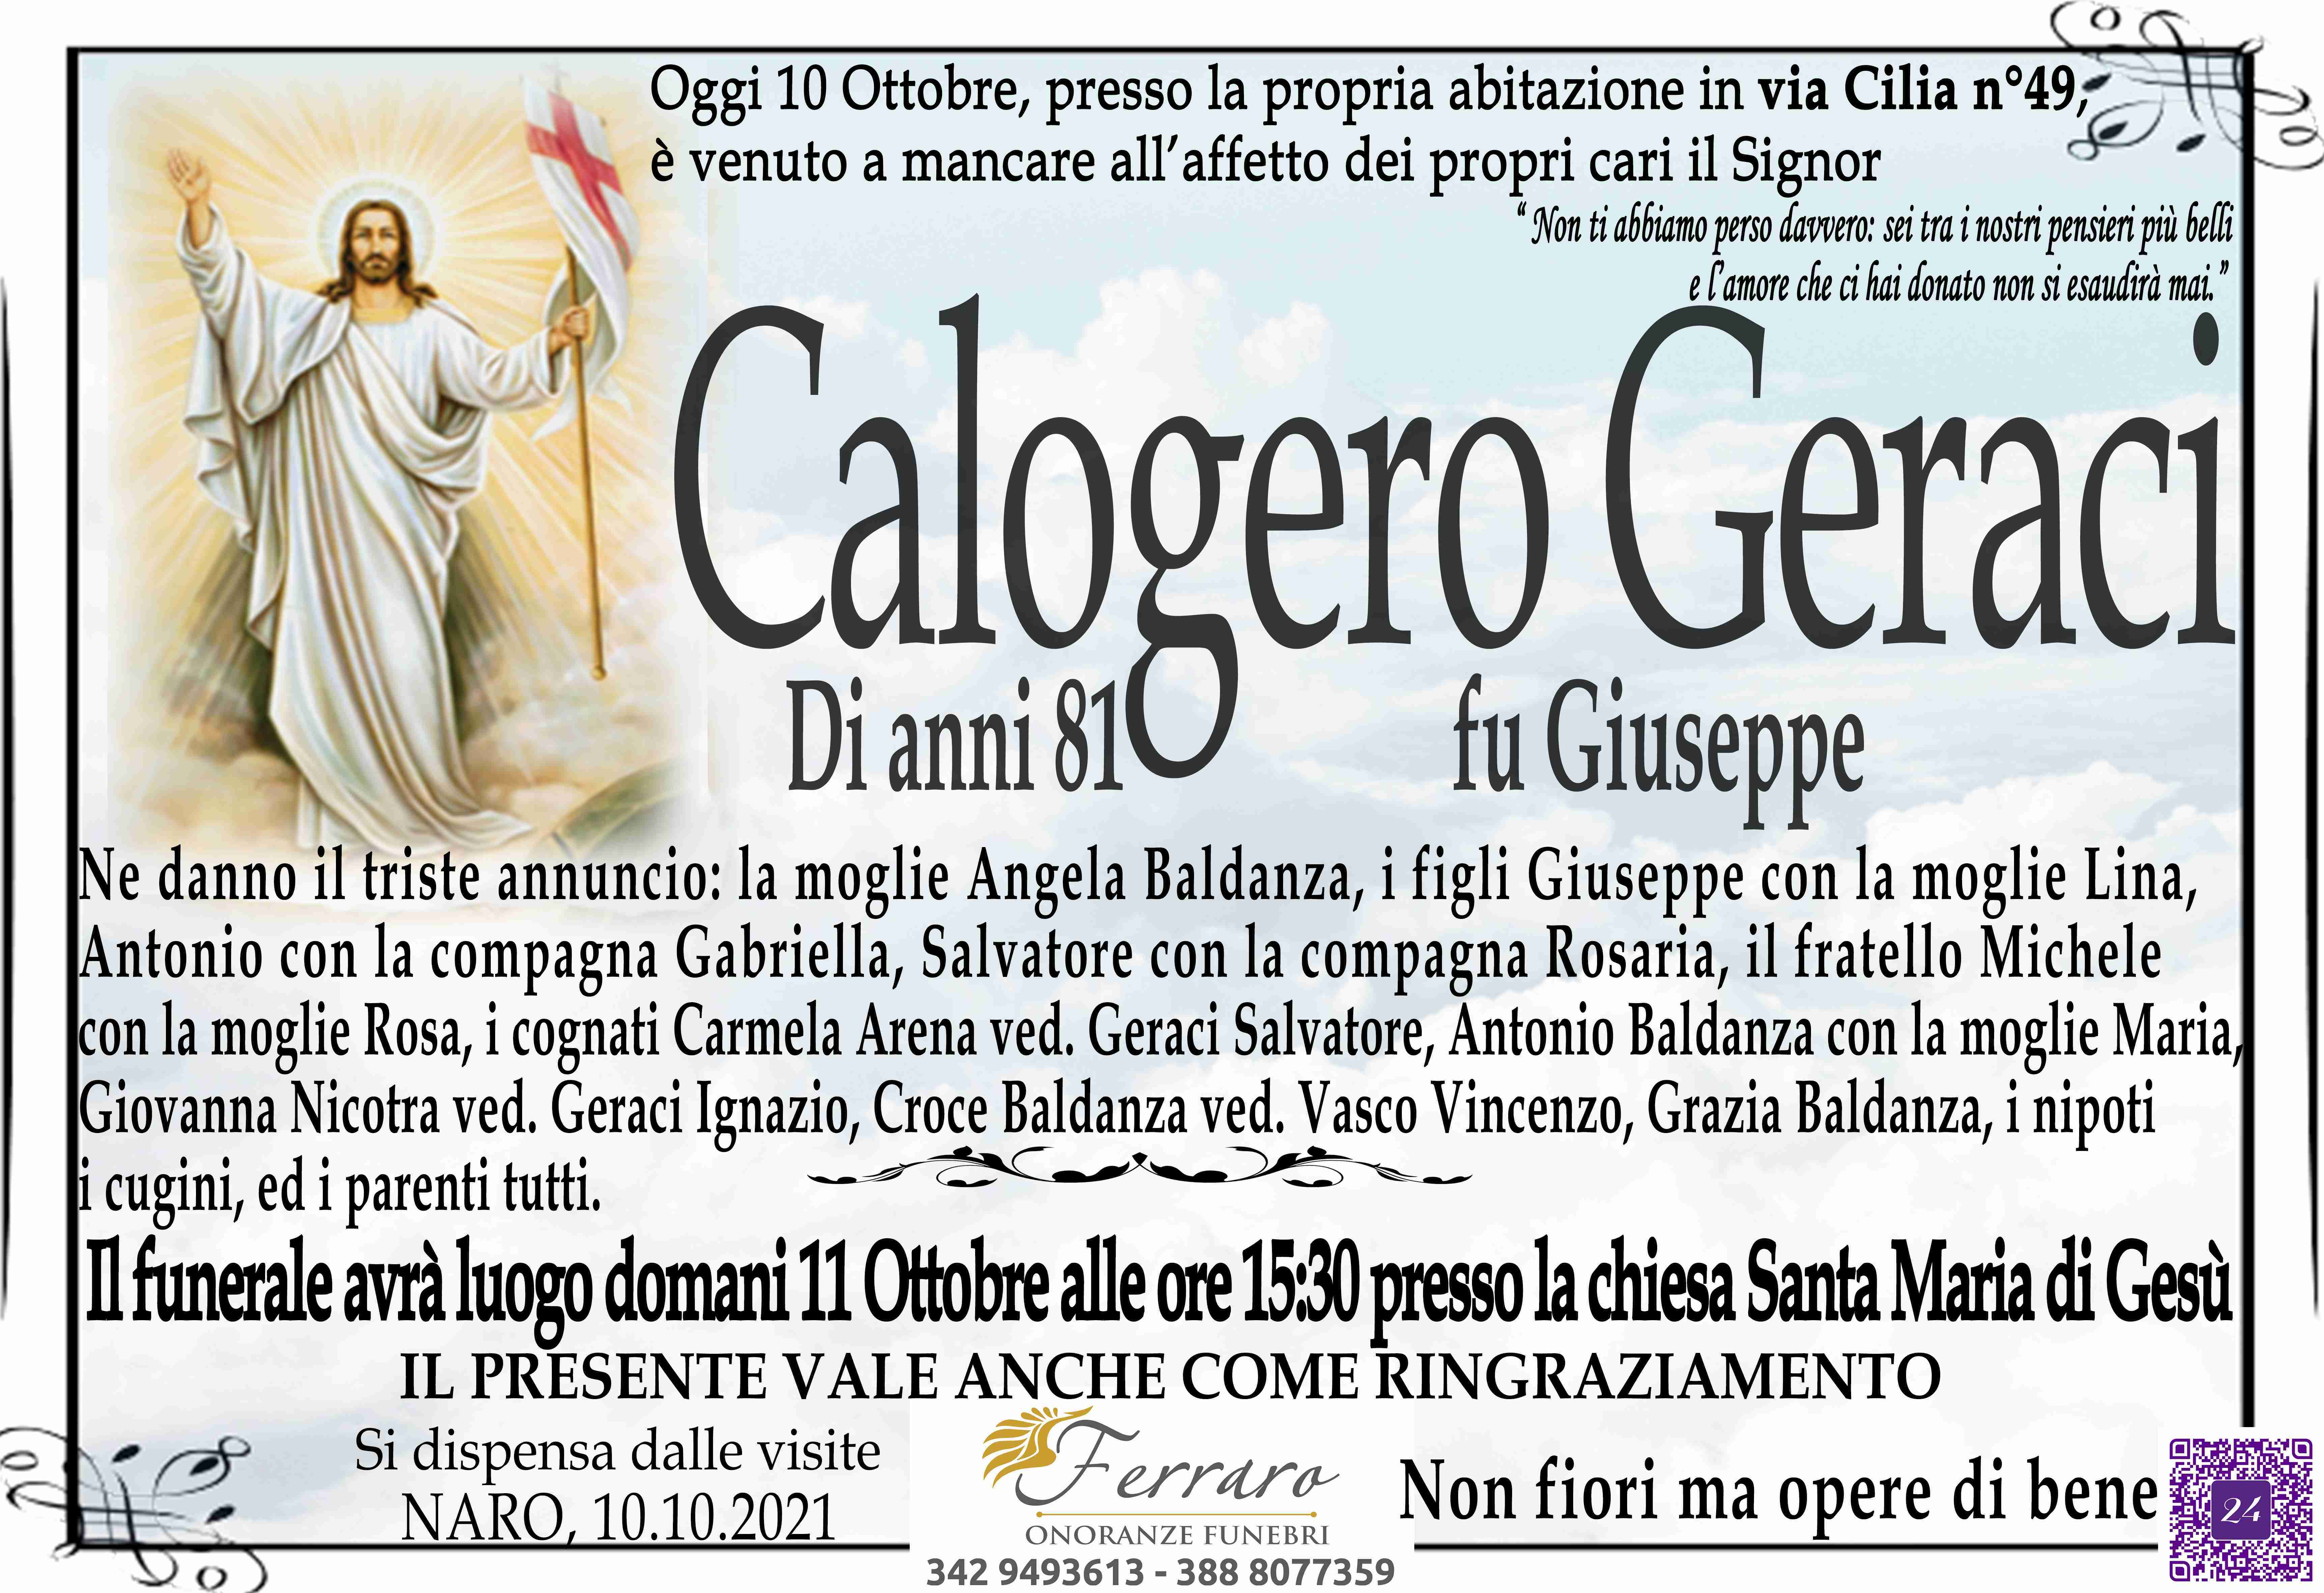 Calogero Geraci